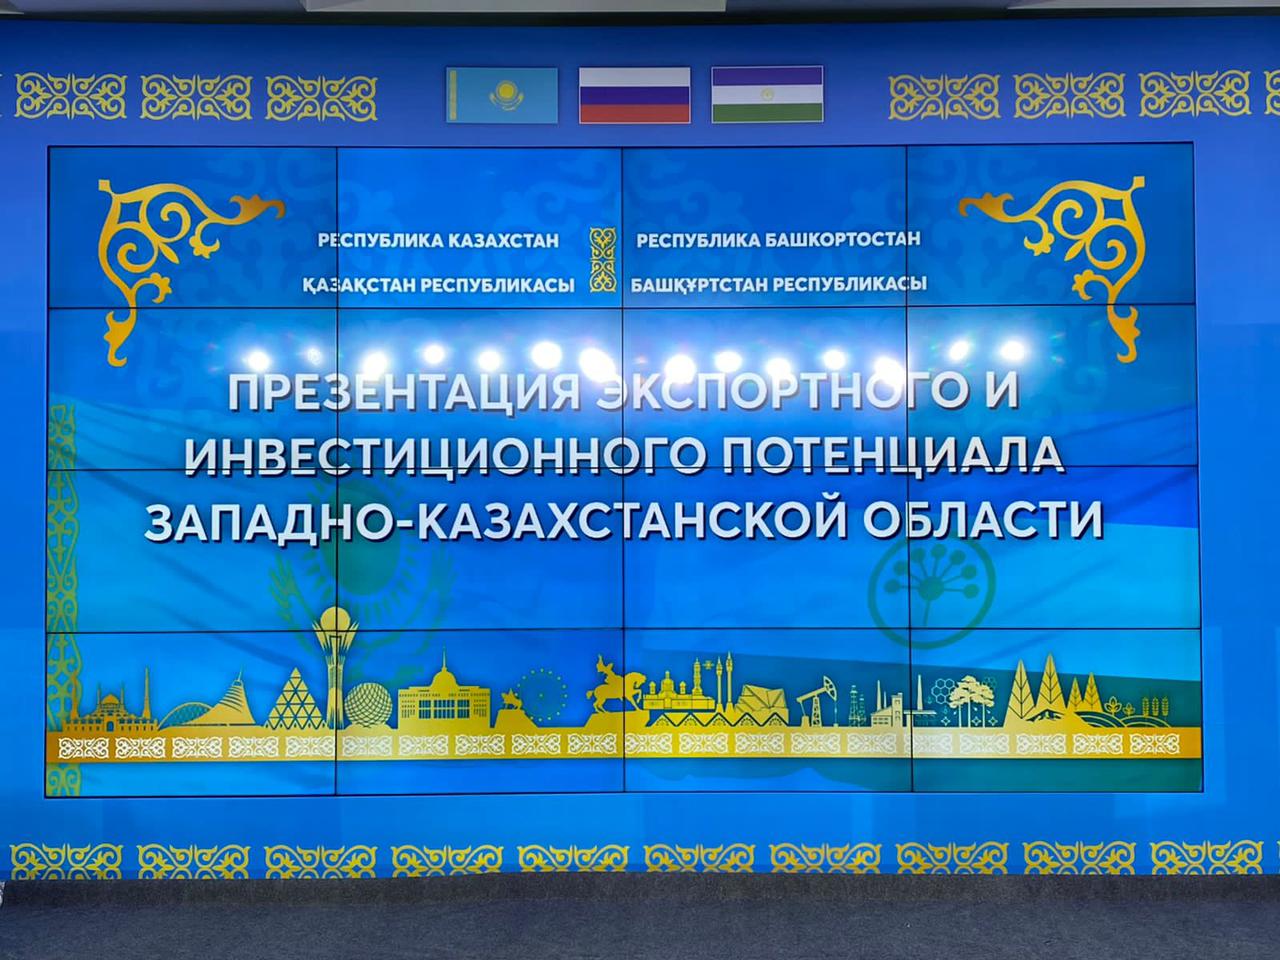 Состоялся визит казахстанской делегации в Башкортостан